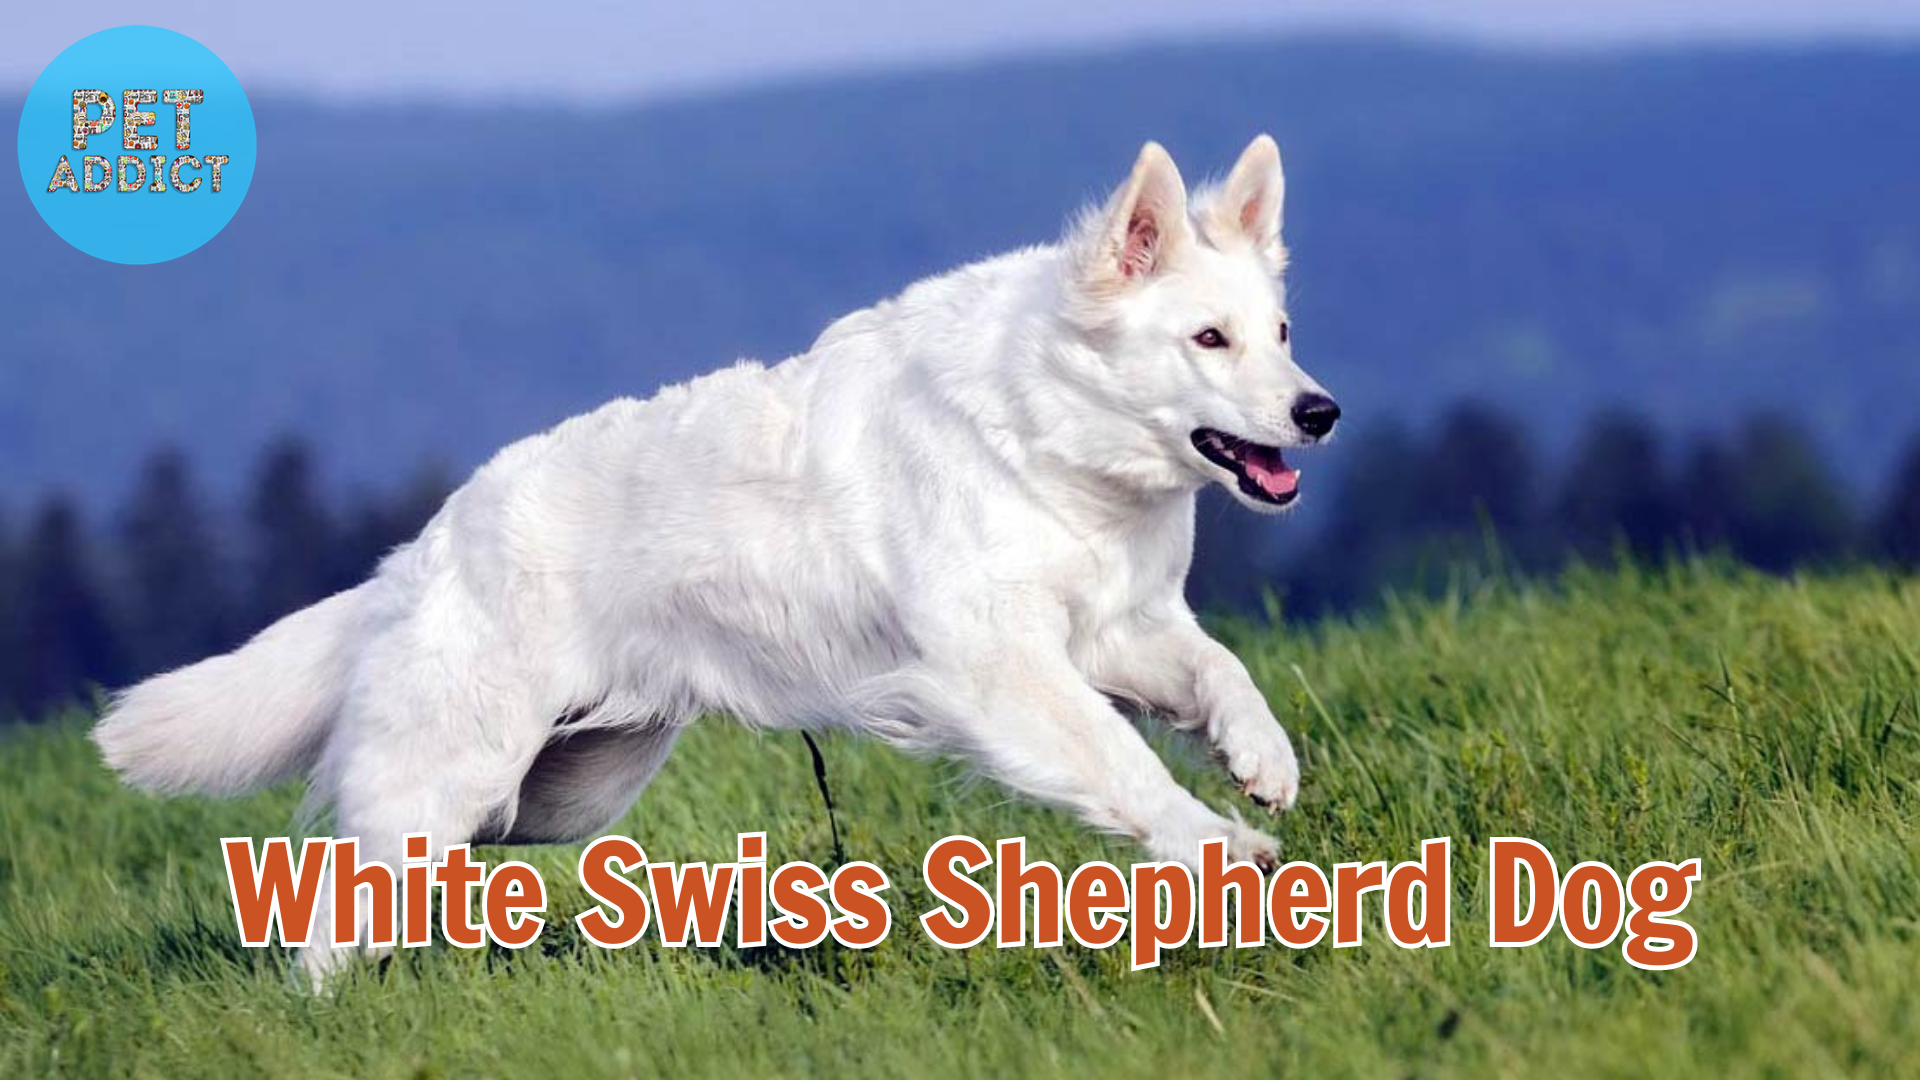 The White Swiss Shepherd Dog